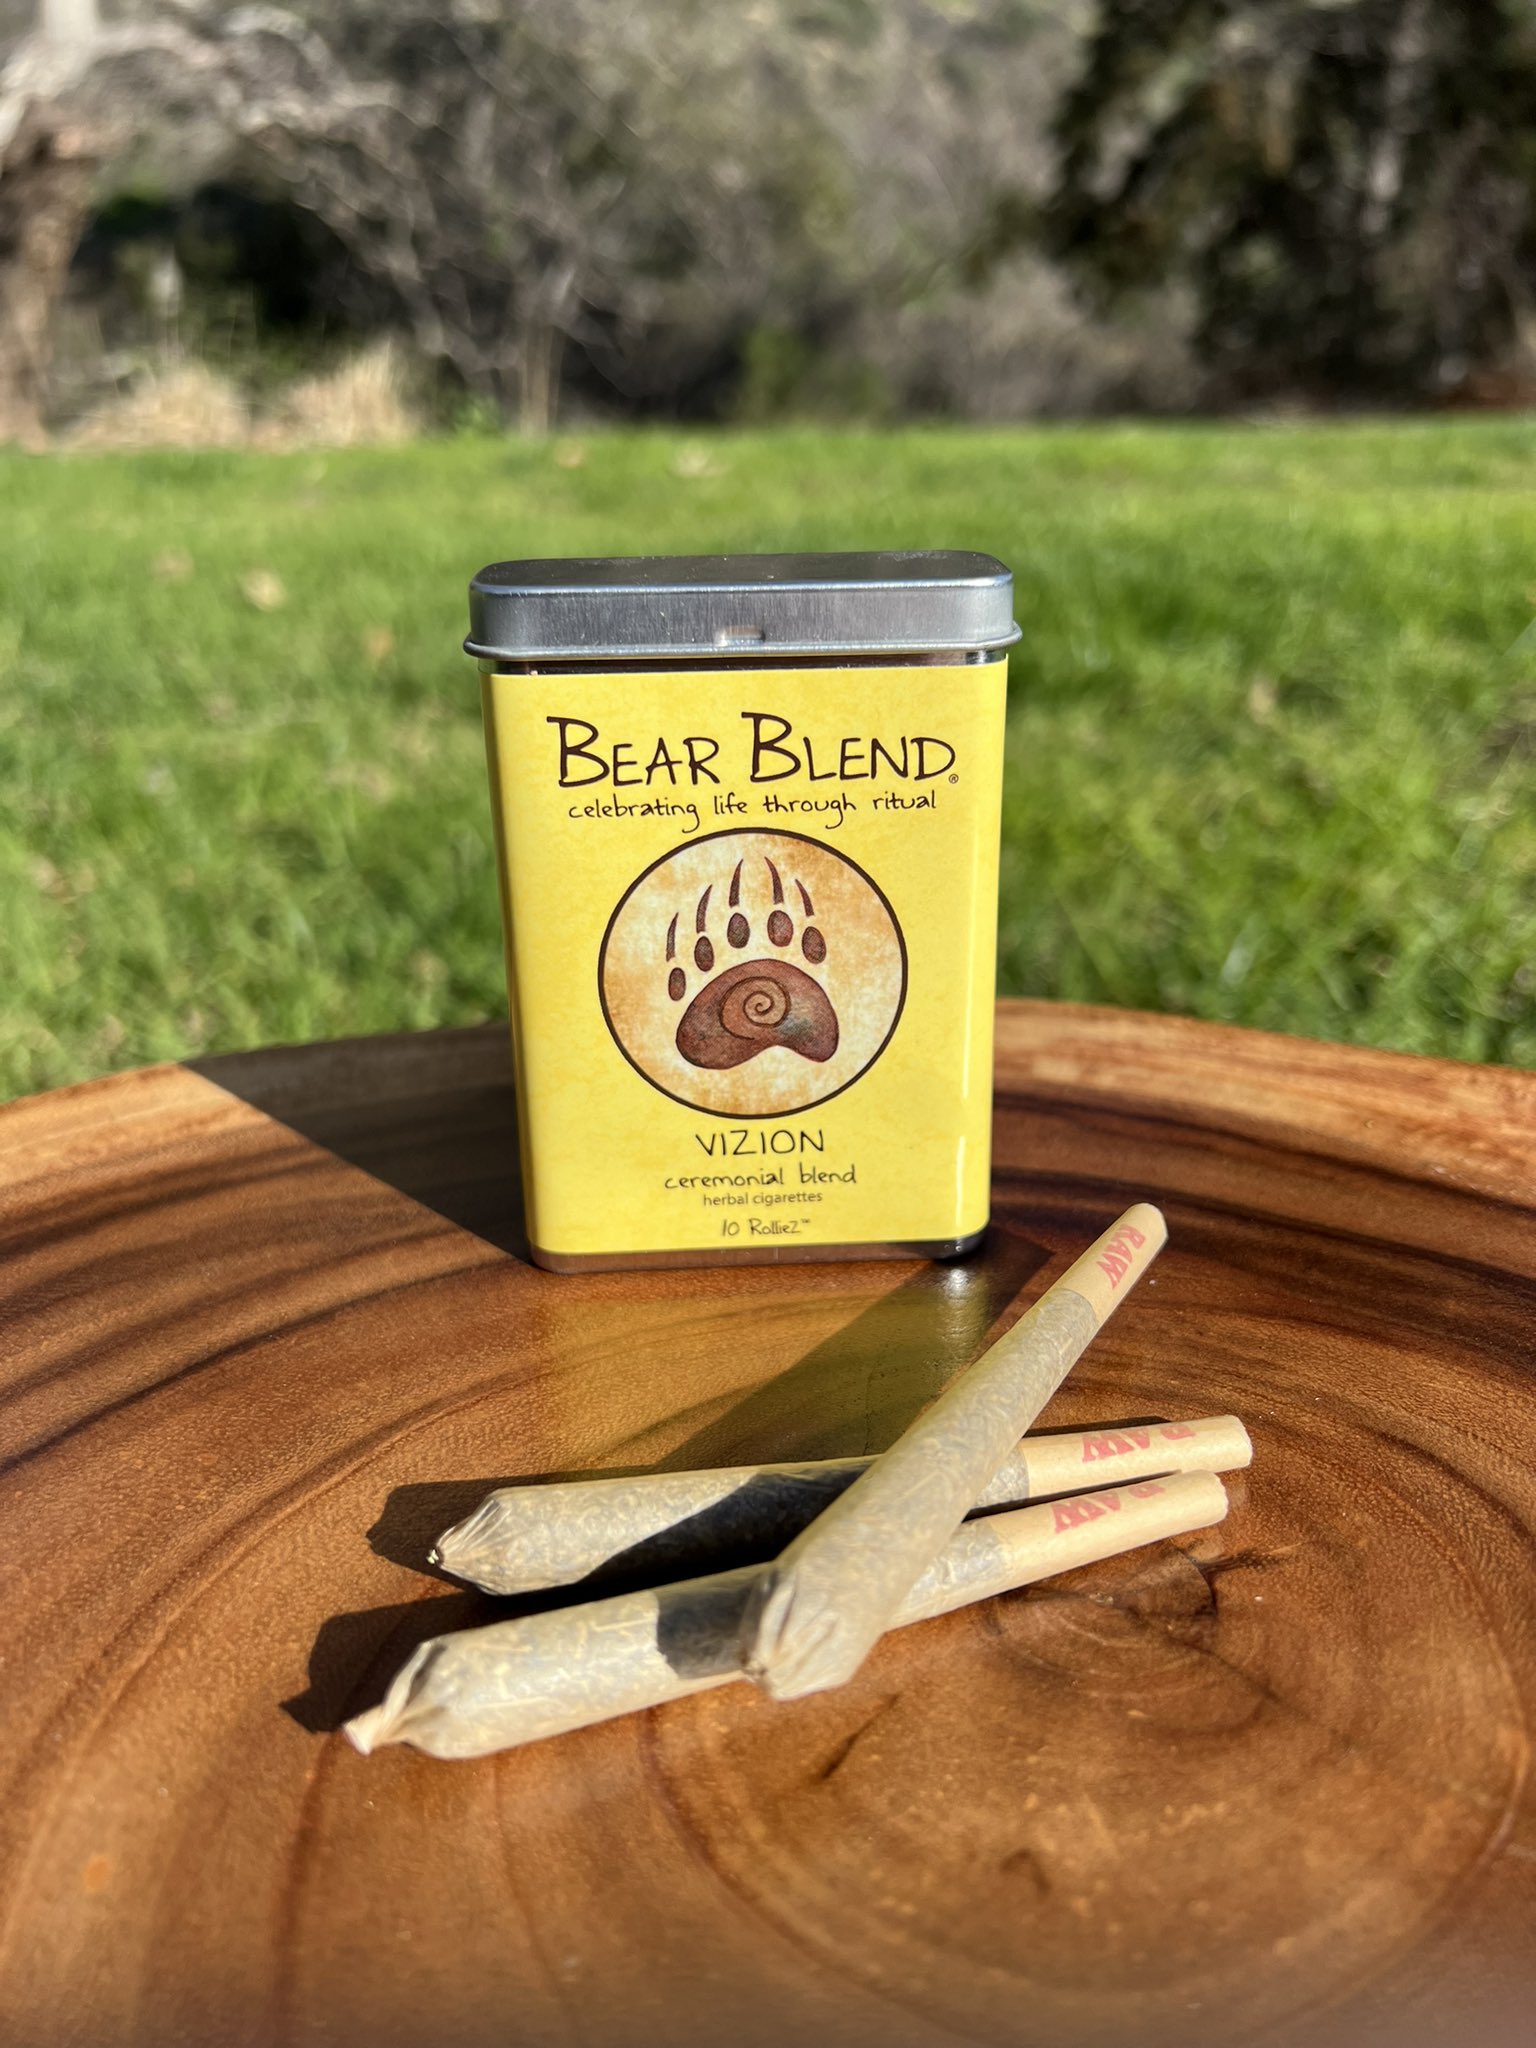 OG Bear Blend Herbal Ceremonial Blend - Bear Blend